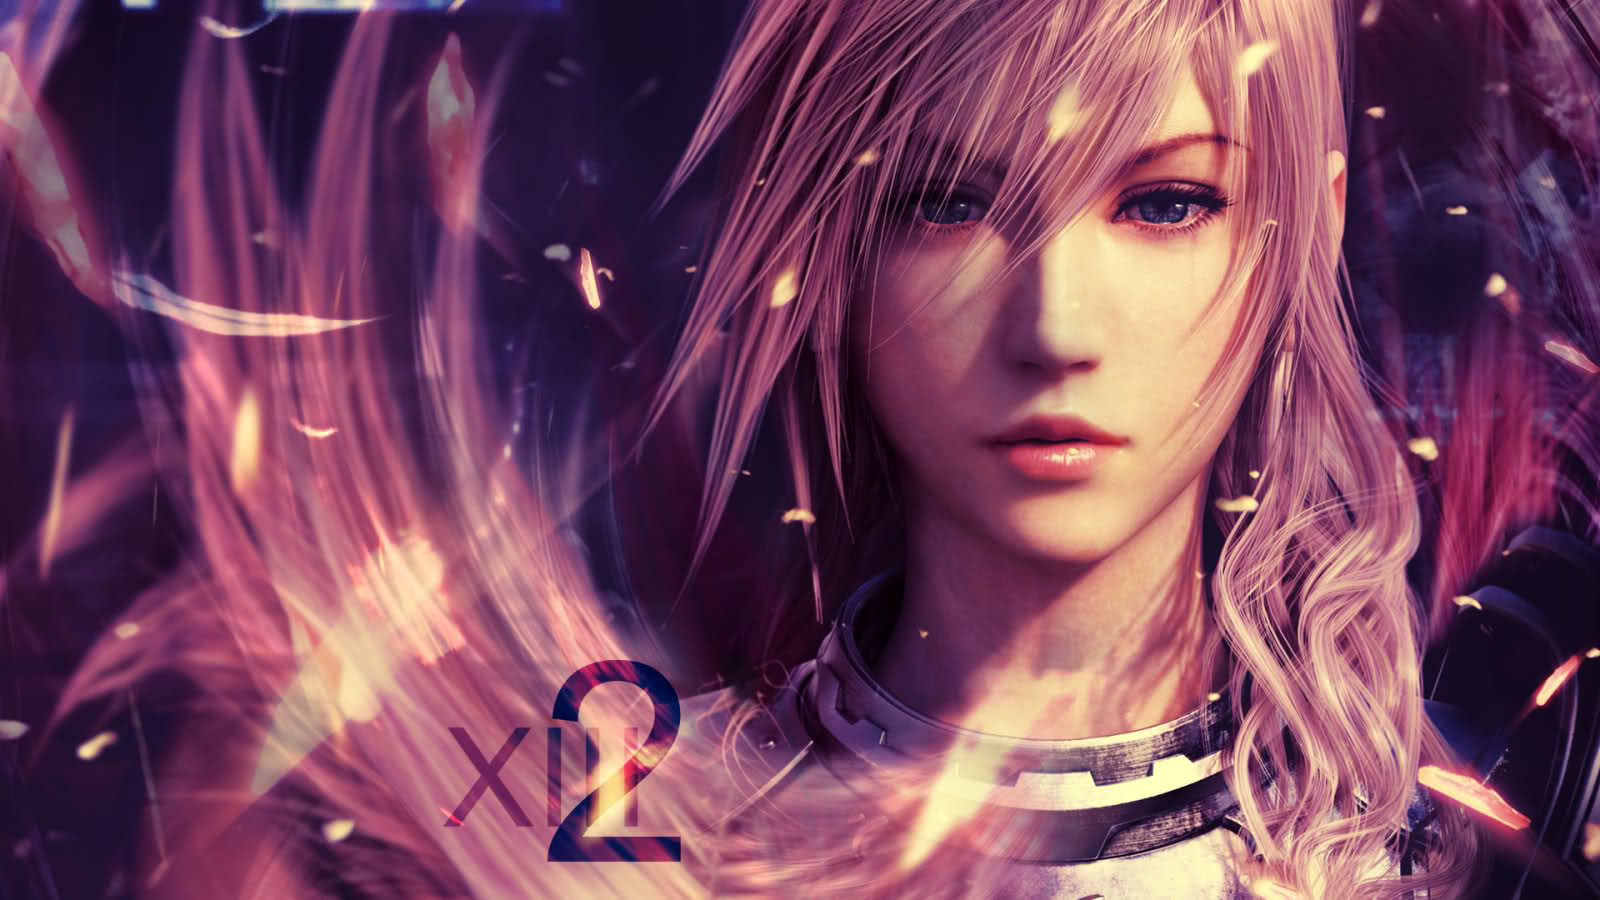 Melhores papéis de parede de Final Fantasy Xiii 2 para tela do telefone